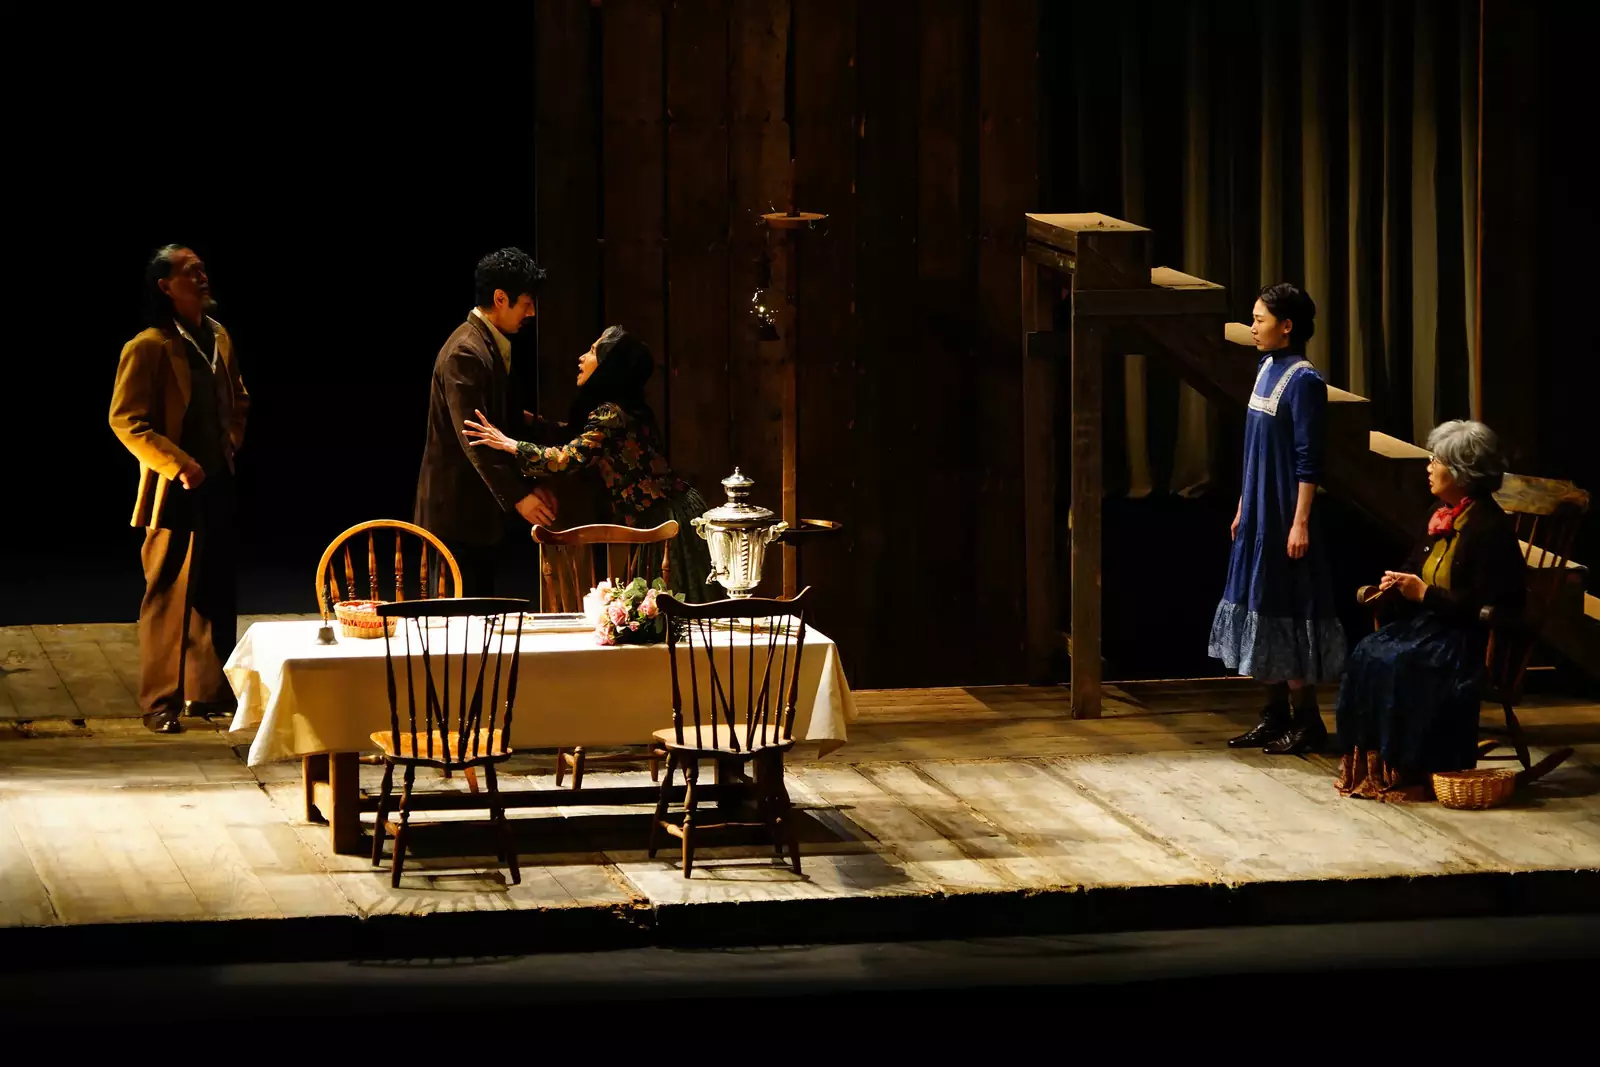 Театральная кухня и ее процессы занимают важное место в повествовании. Вот как японцы видят "Дядя Ваню" на своей сцене (по крайней мере, в интерпретации режиссера картины).